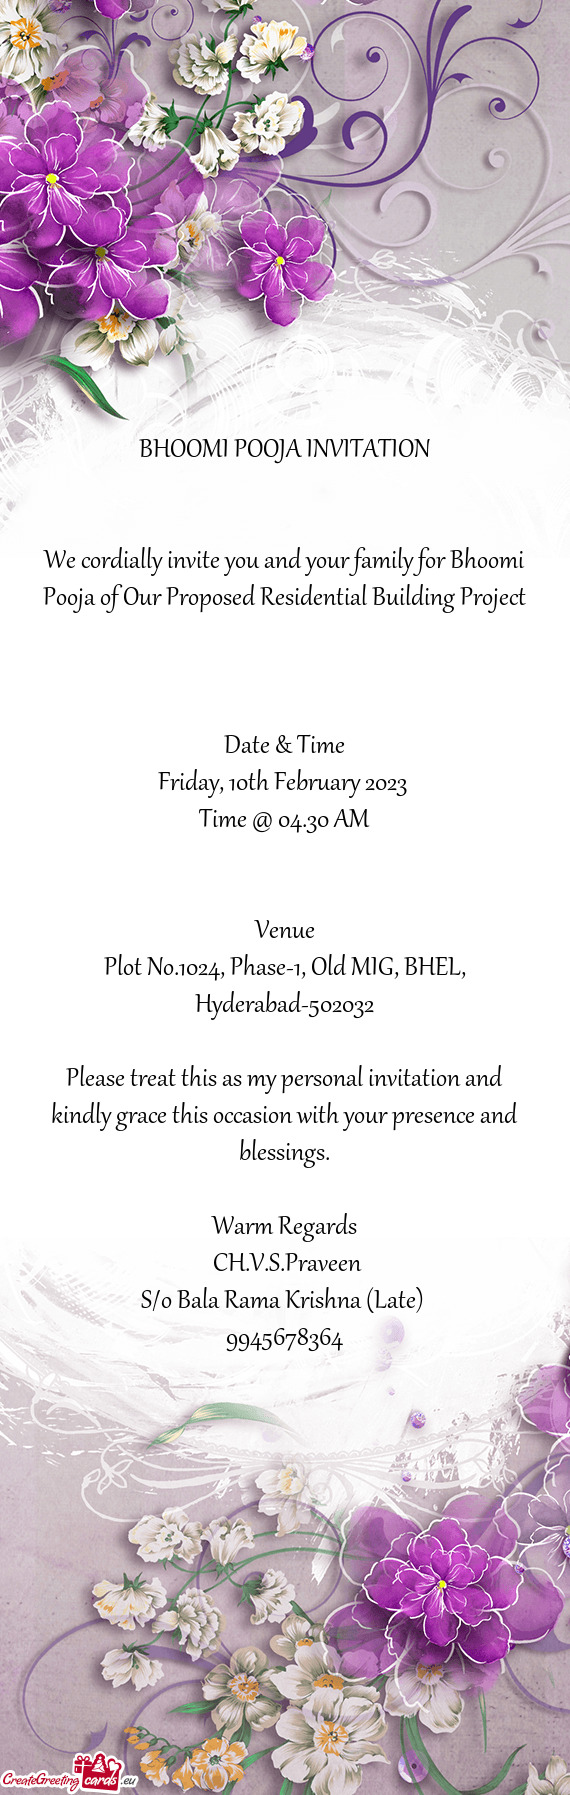 BHOOMI POOJA INVITATION